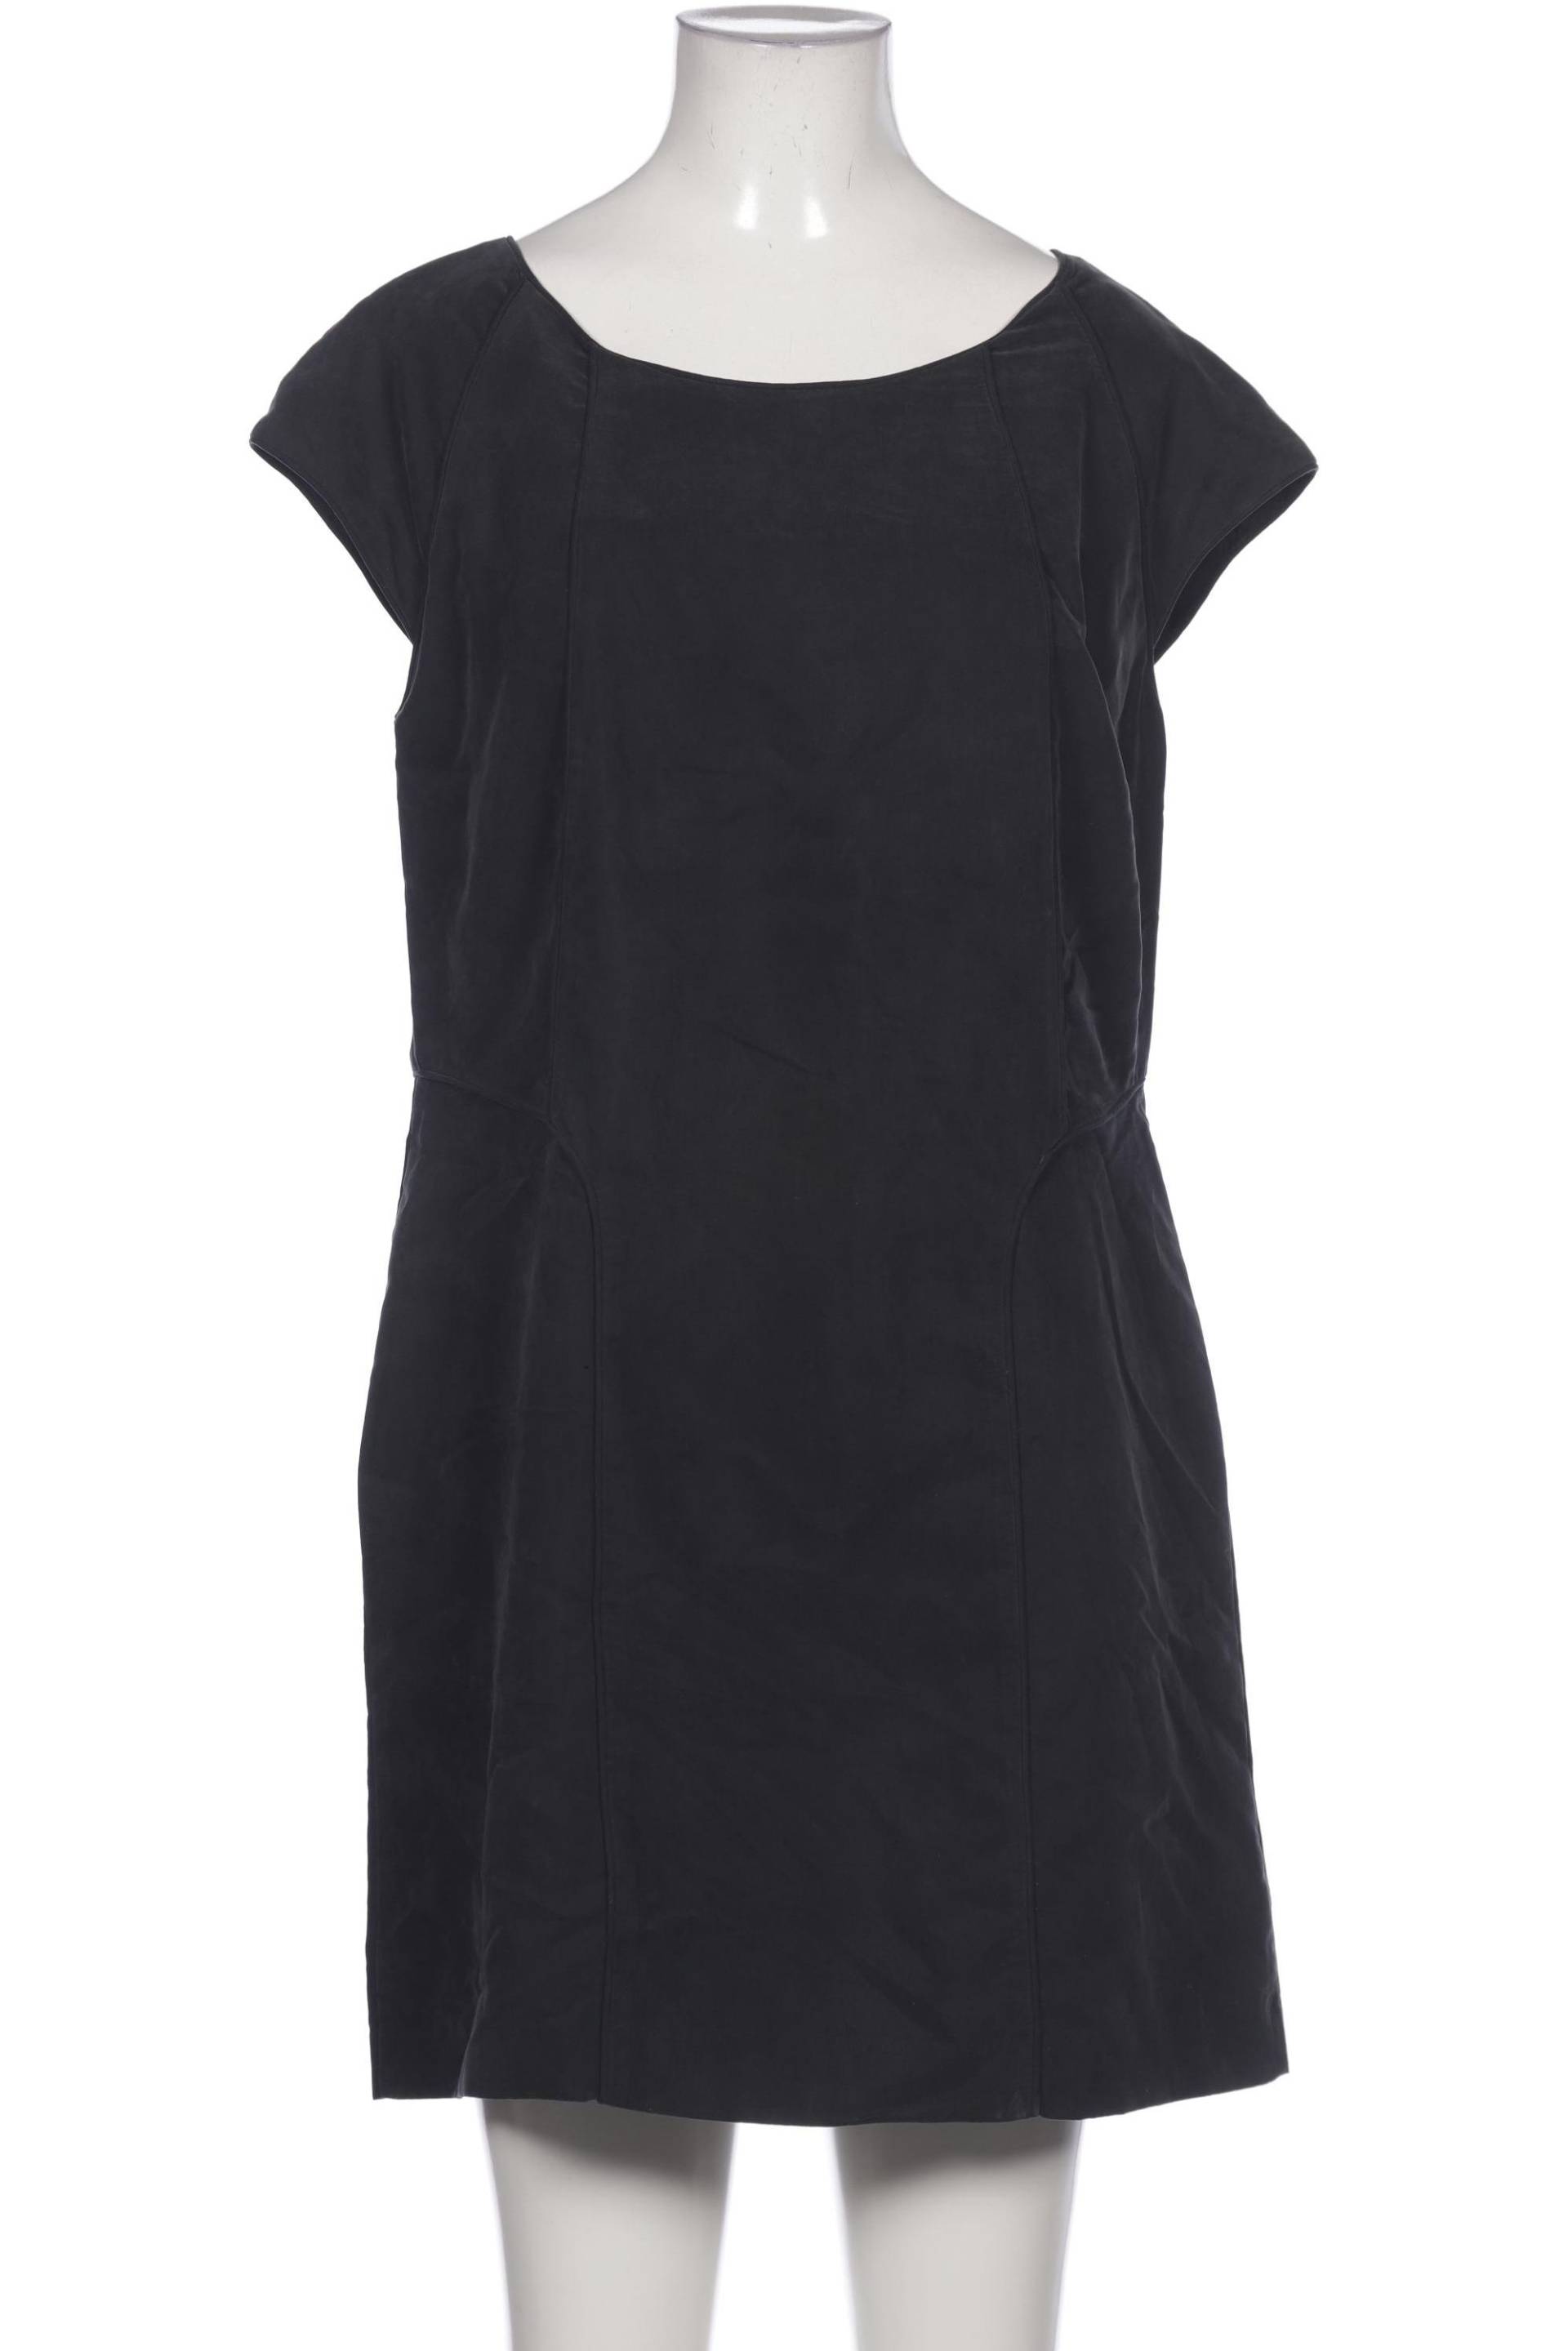 oasis Damen Kleid, schwarz, Gr. 40 von Oasis